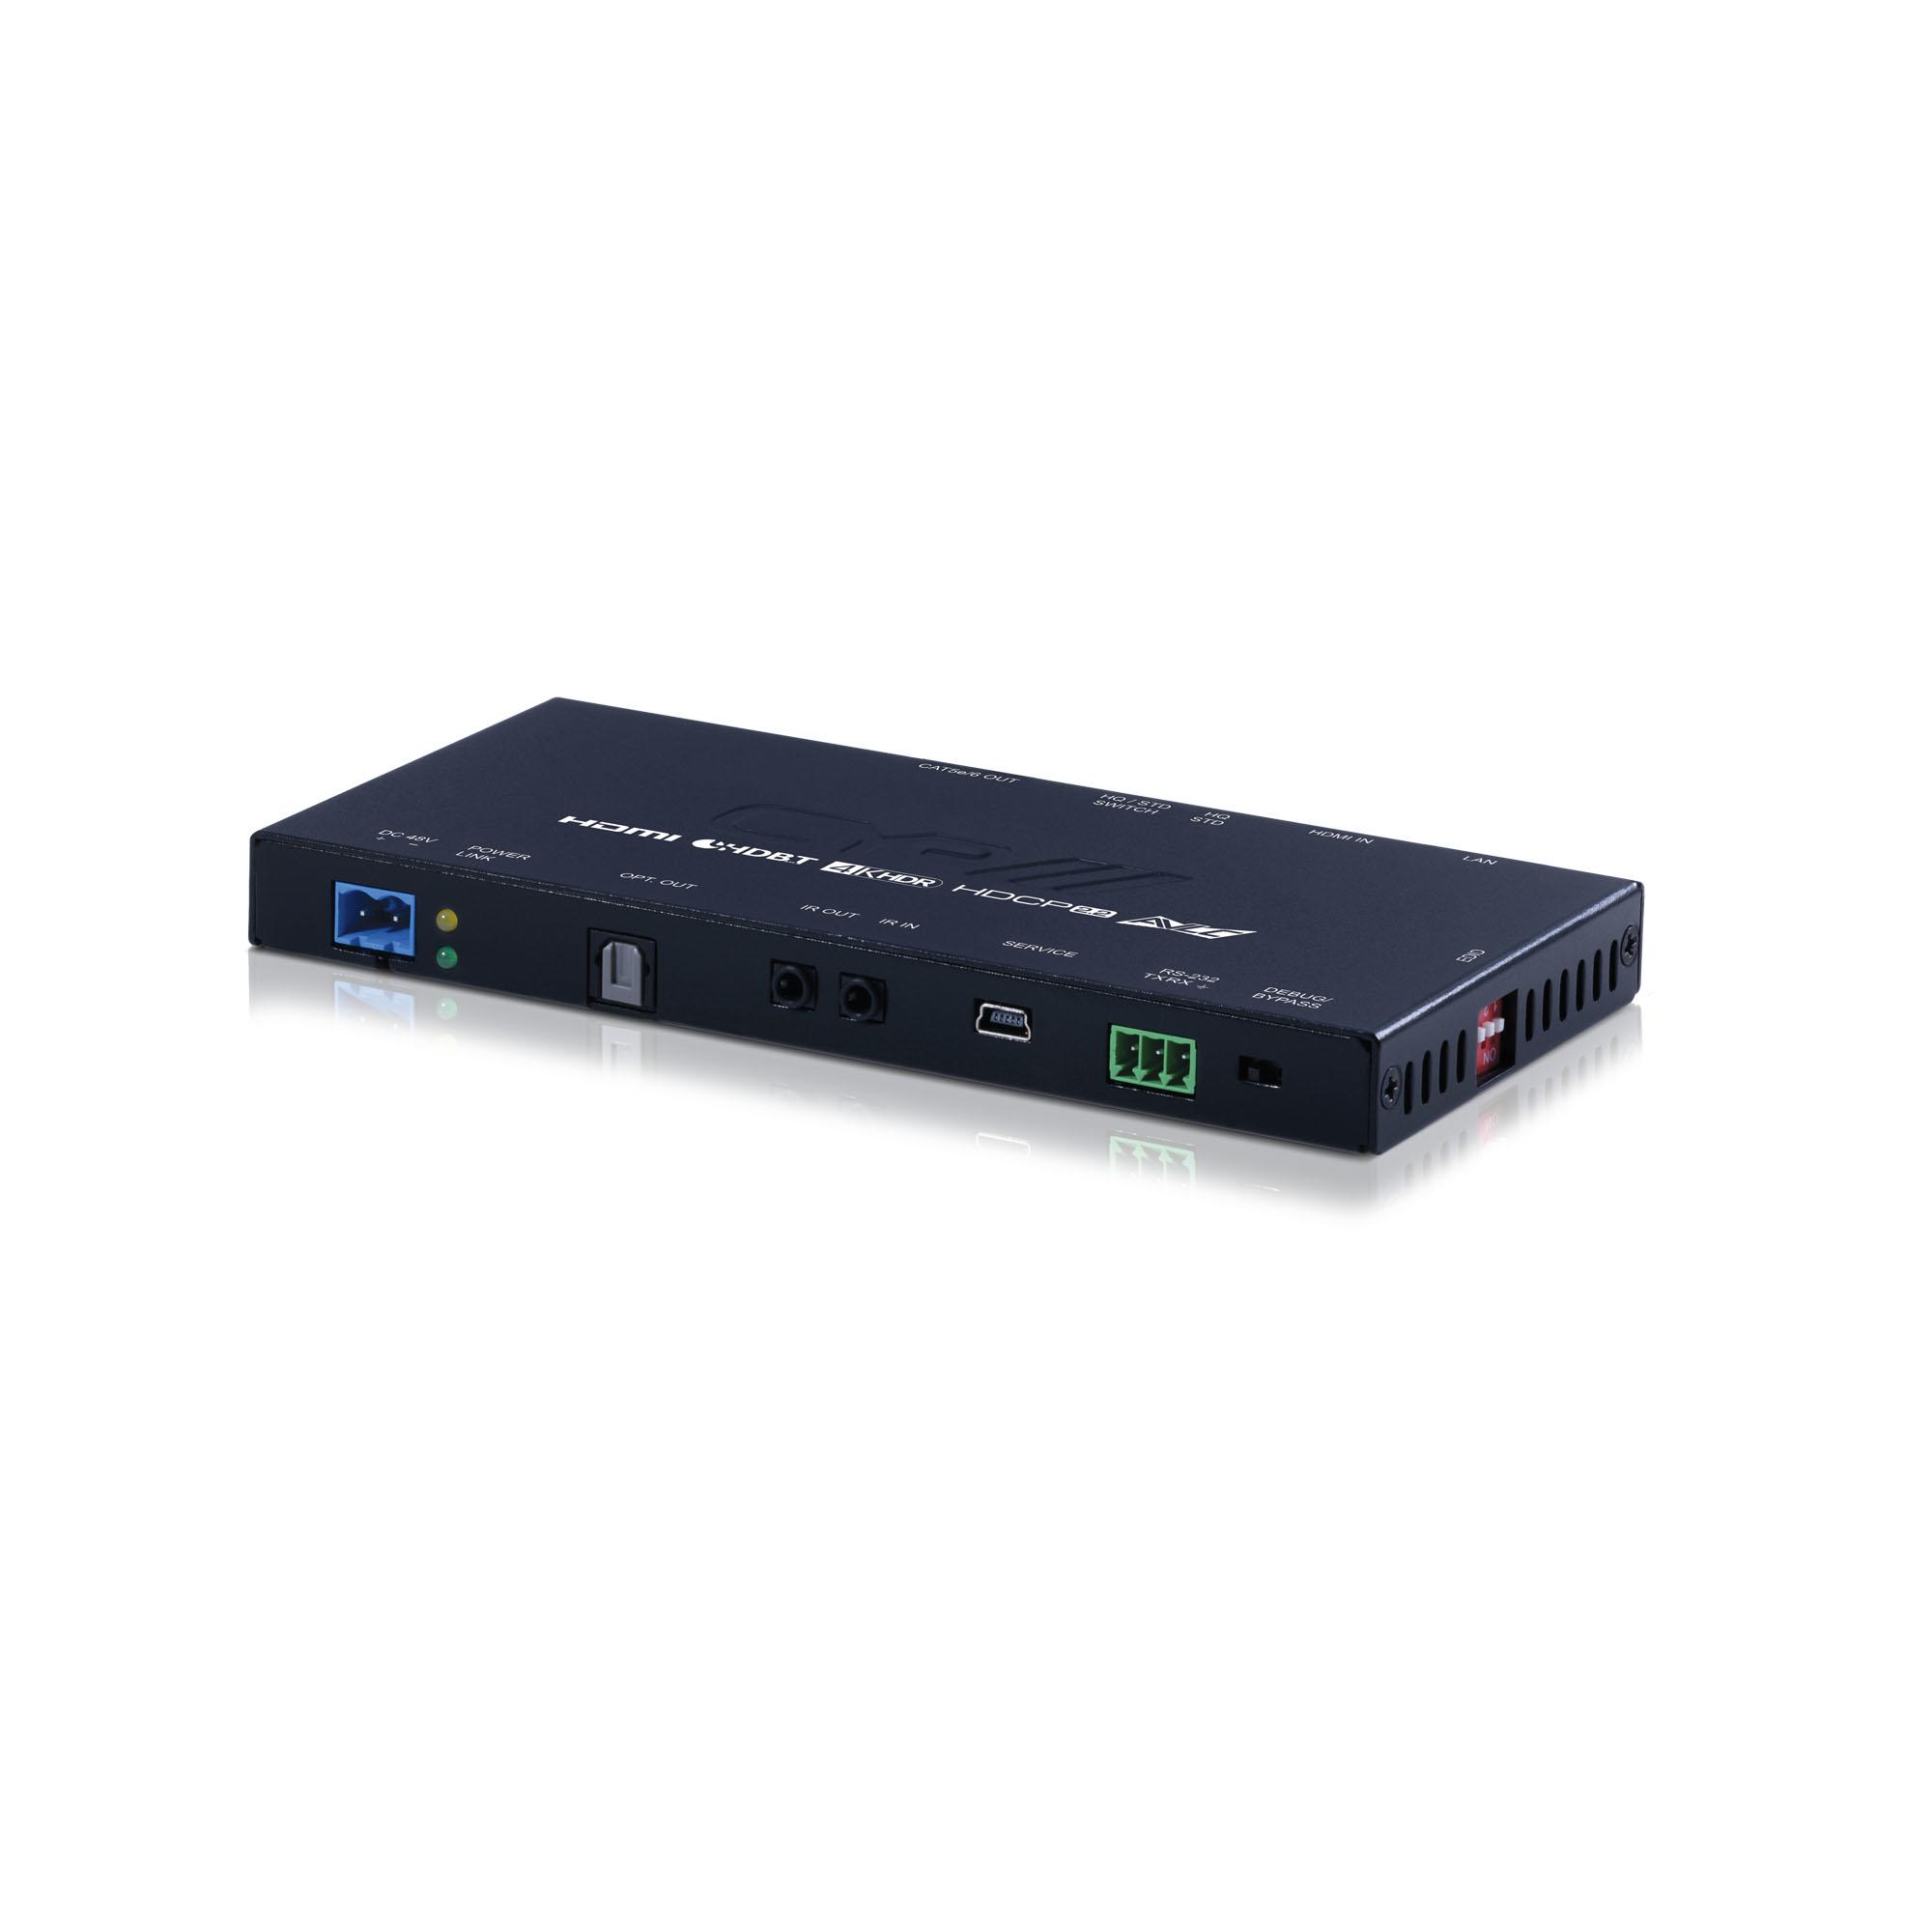 PUV-1830TX-AVLC 5-Play HDBaseT™ Transmitter (inc. PoH & single LAN, up to 100m, Audio AVLC)